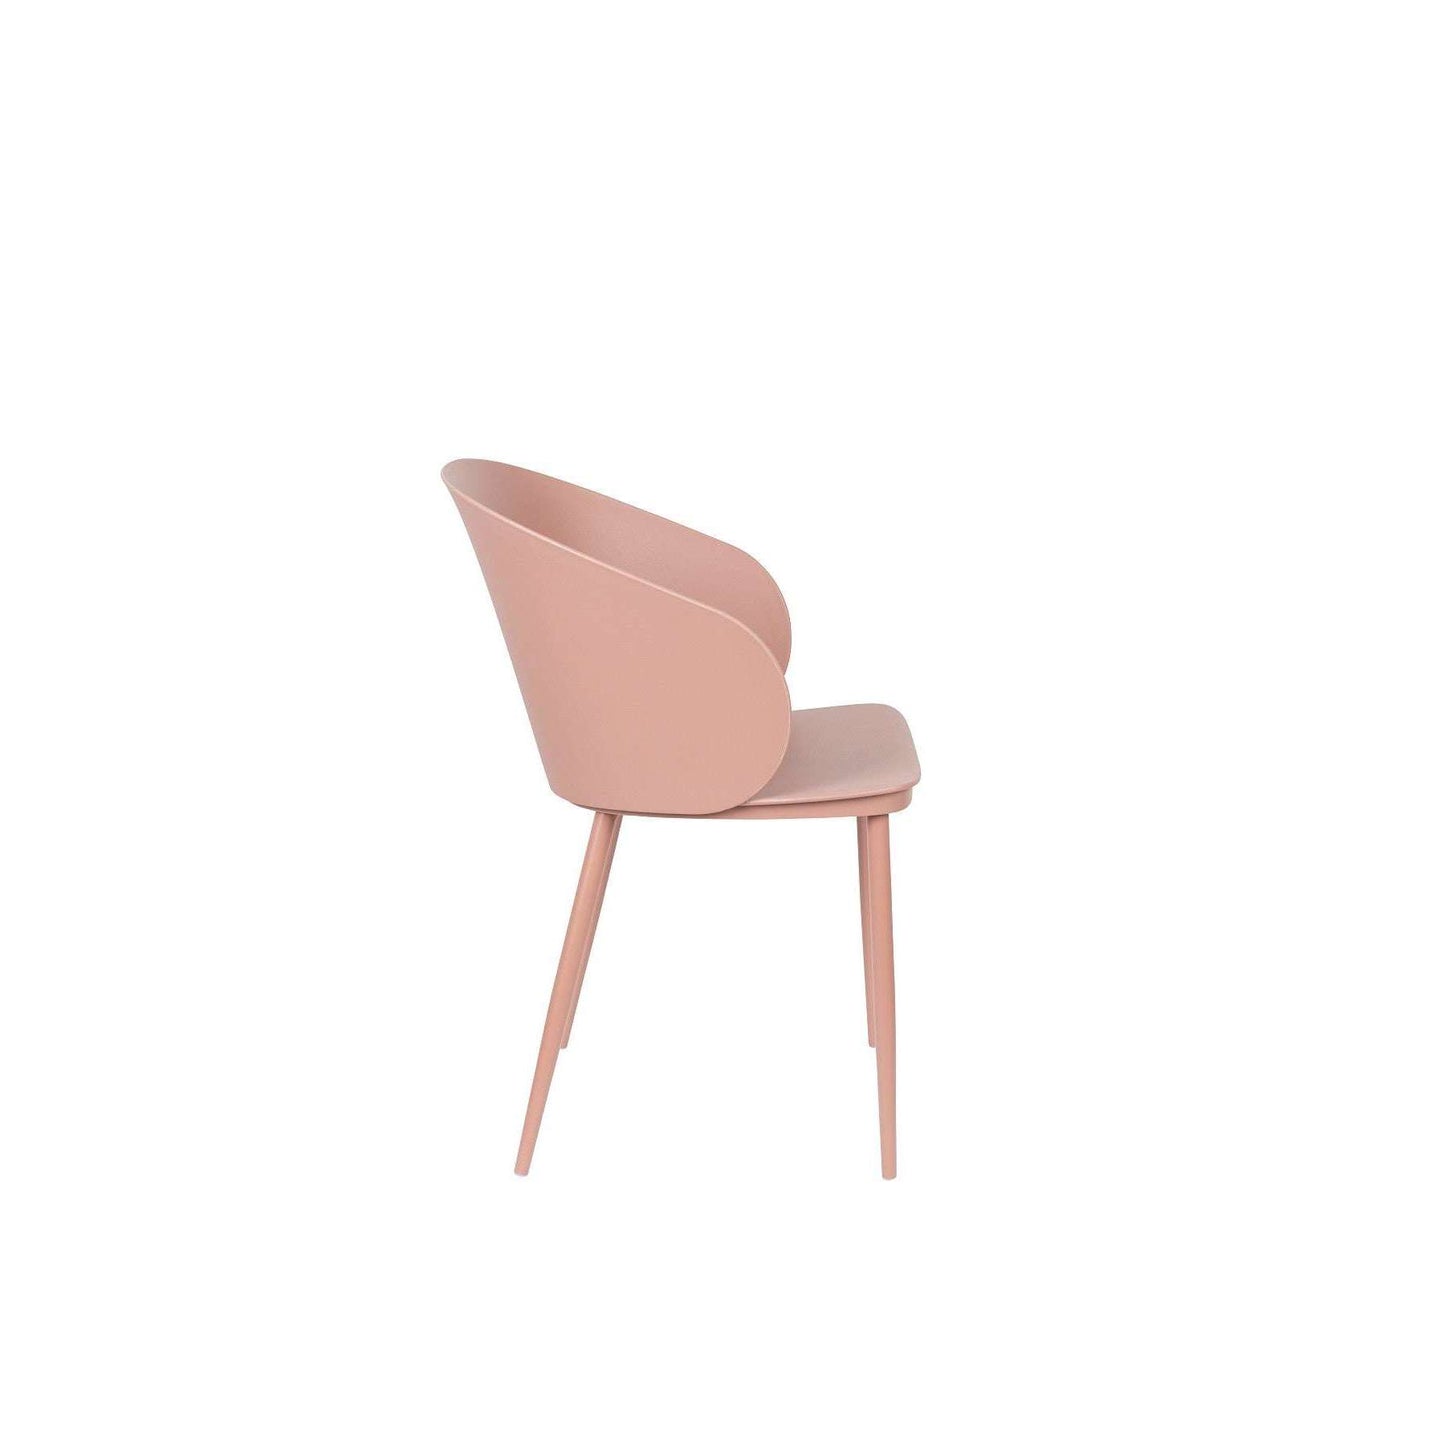 Staerkk stoel gigill roze 53,5 x 57 x 81 cm